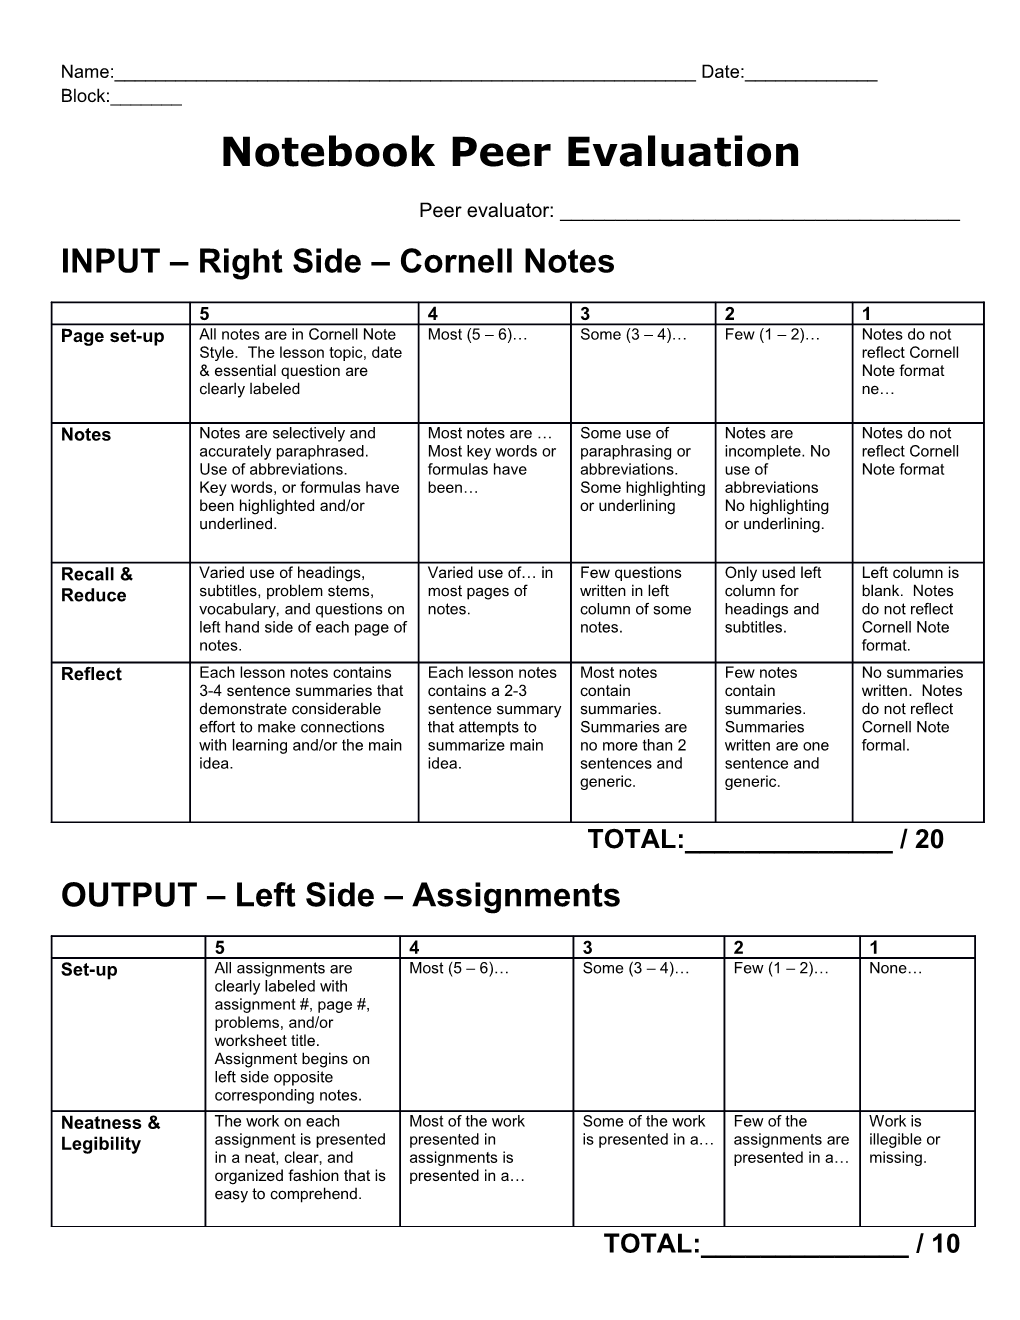 Notebook Peer Evaluation